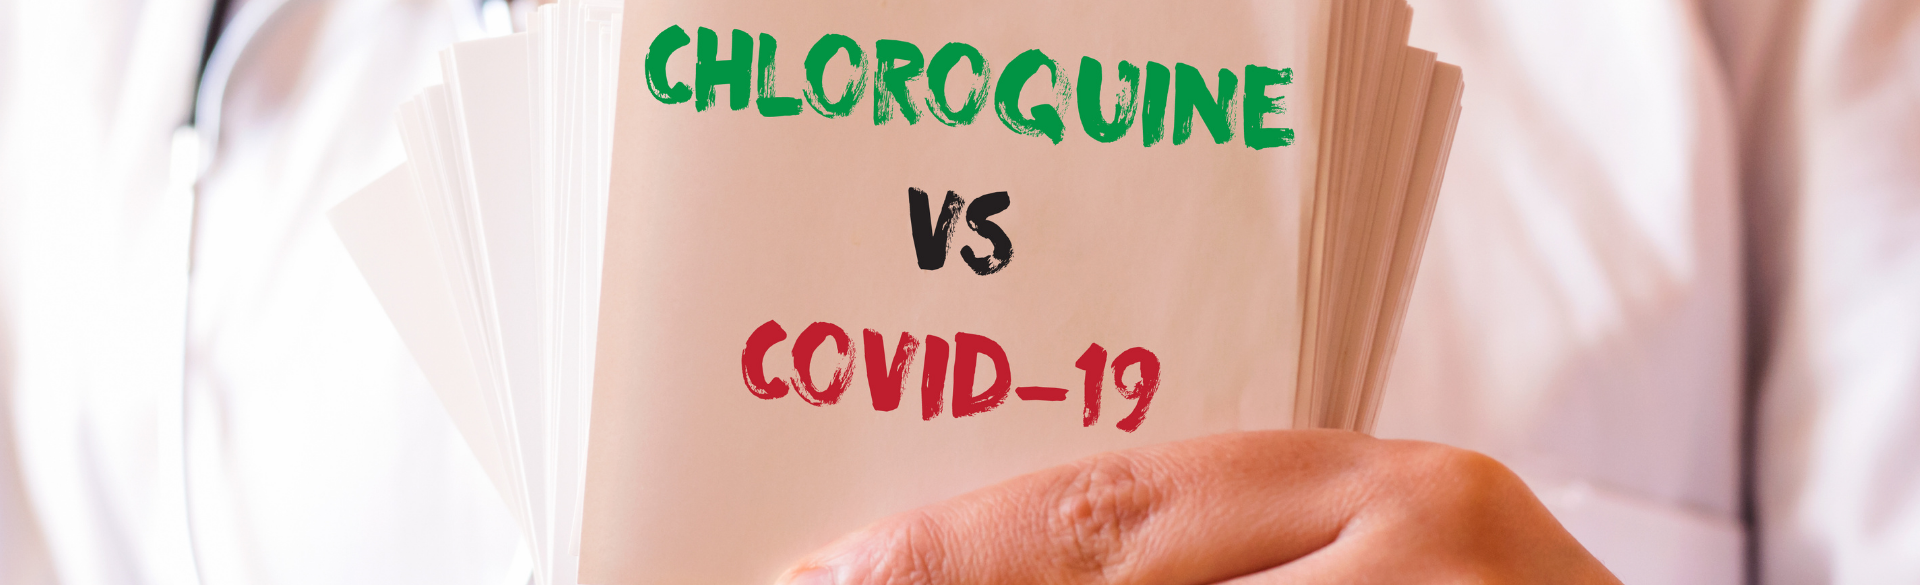 Chloroquine COVID-19 | CU Cancer Center | Aurora, CO